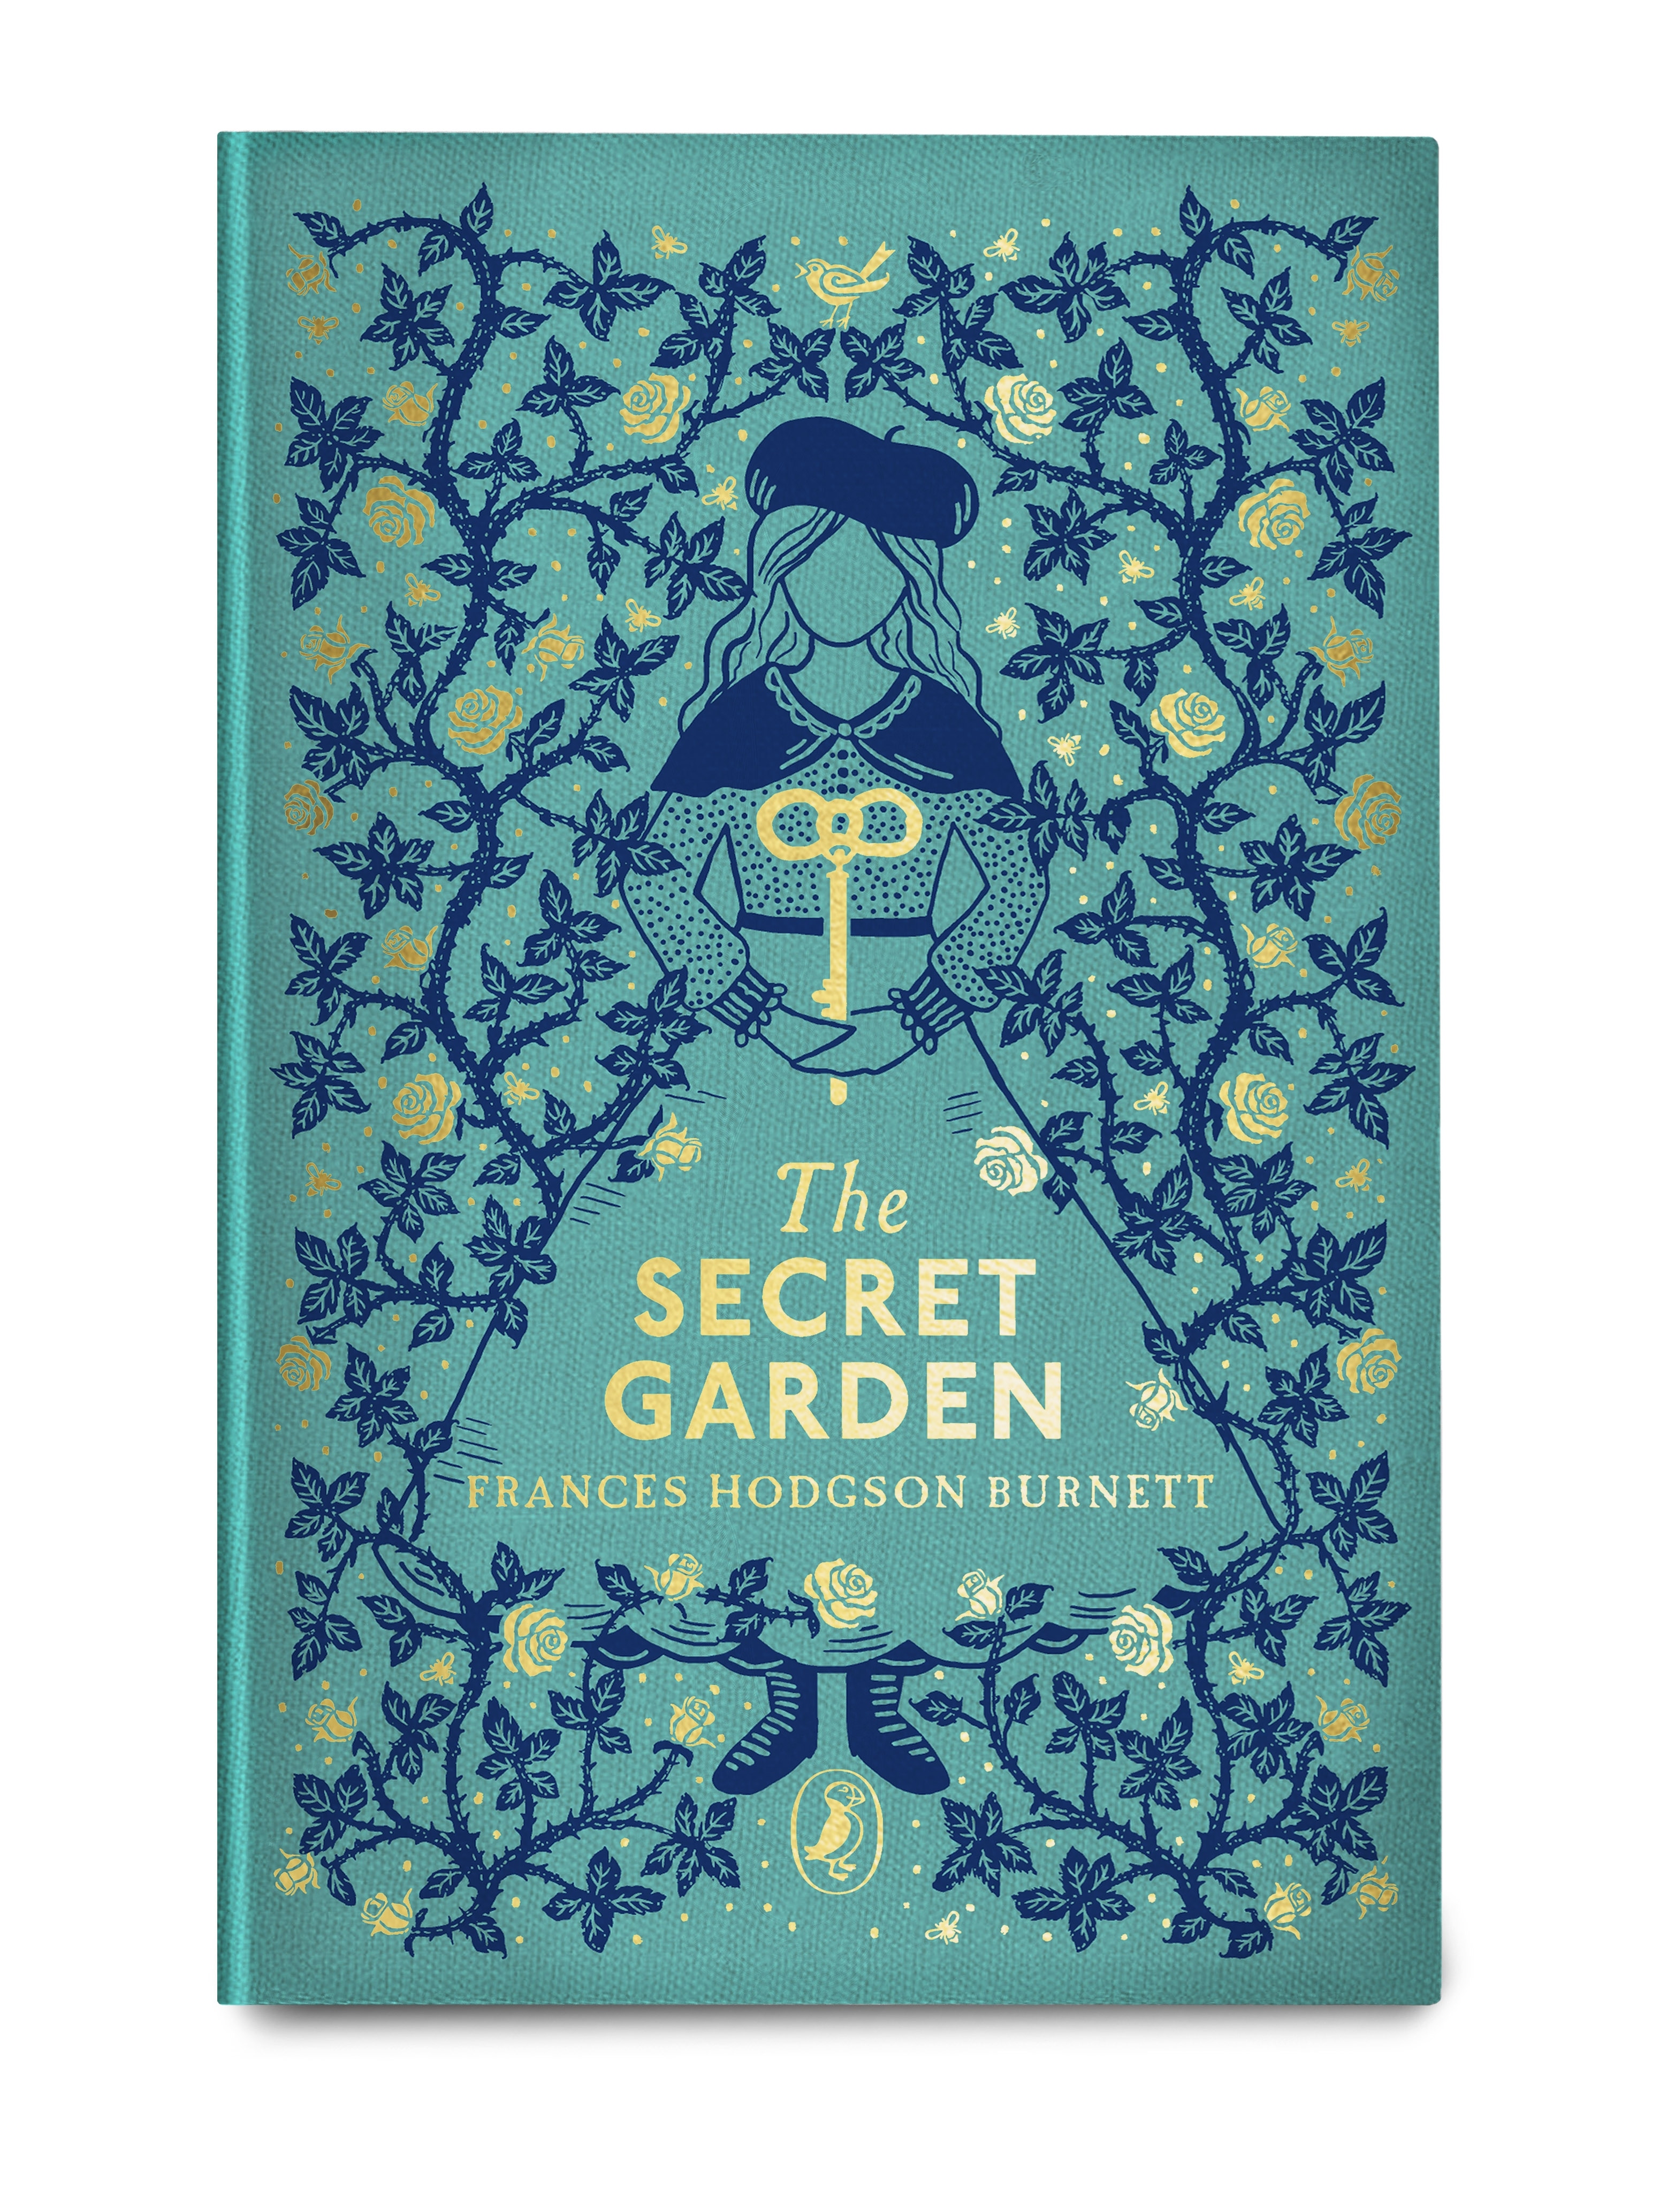 Book “The Secret Garden” by Frances Hodgson Burnett